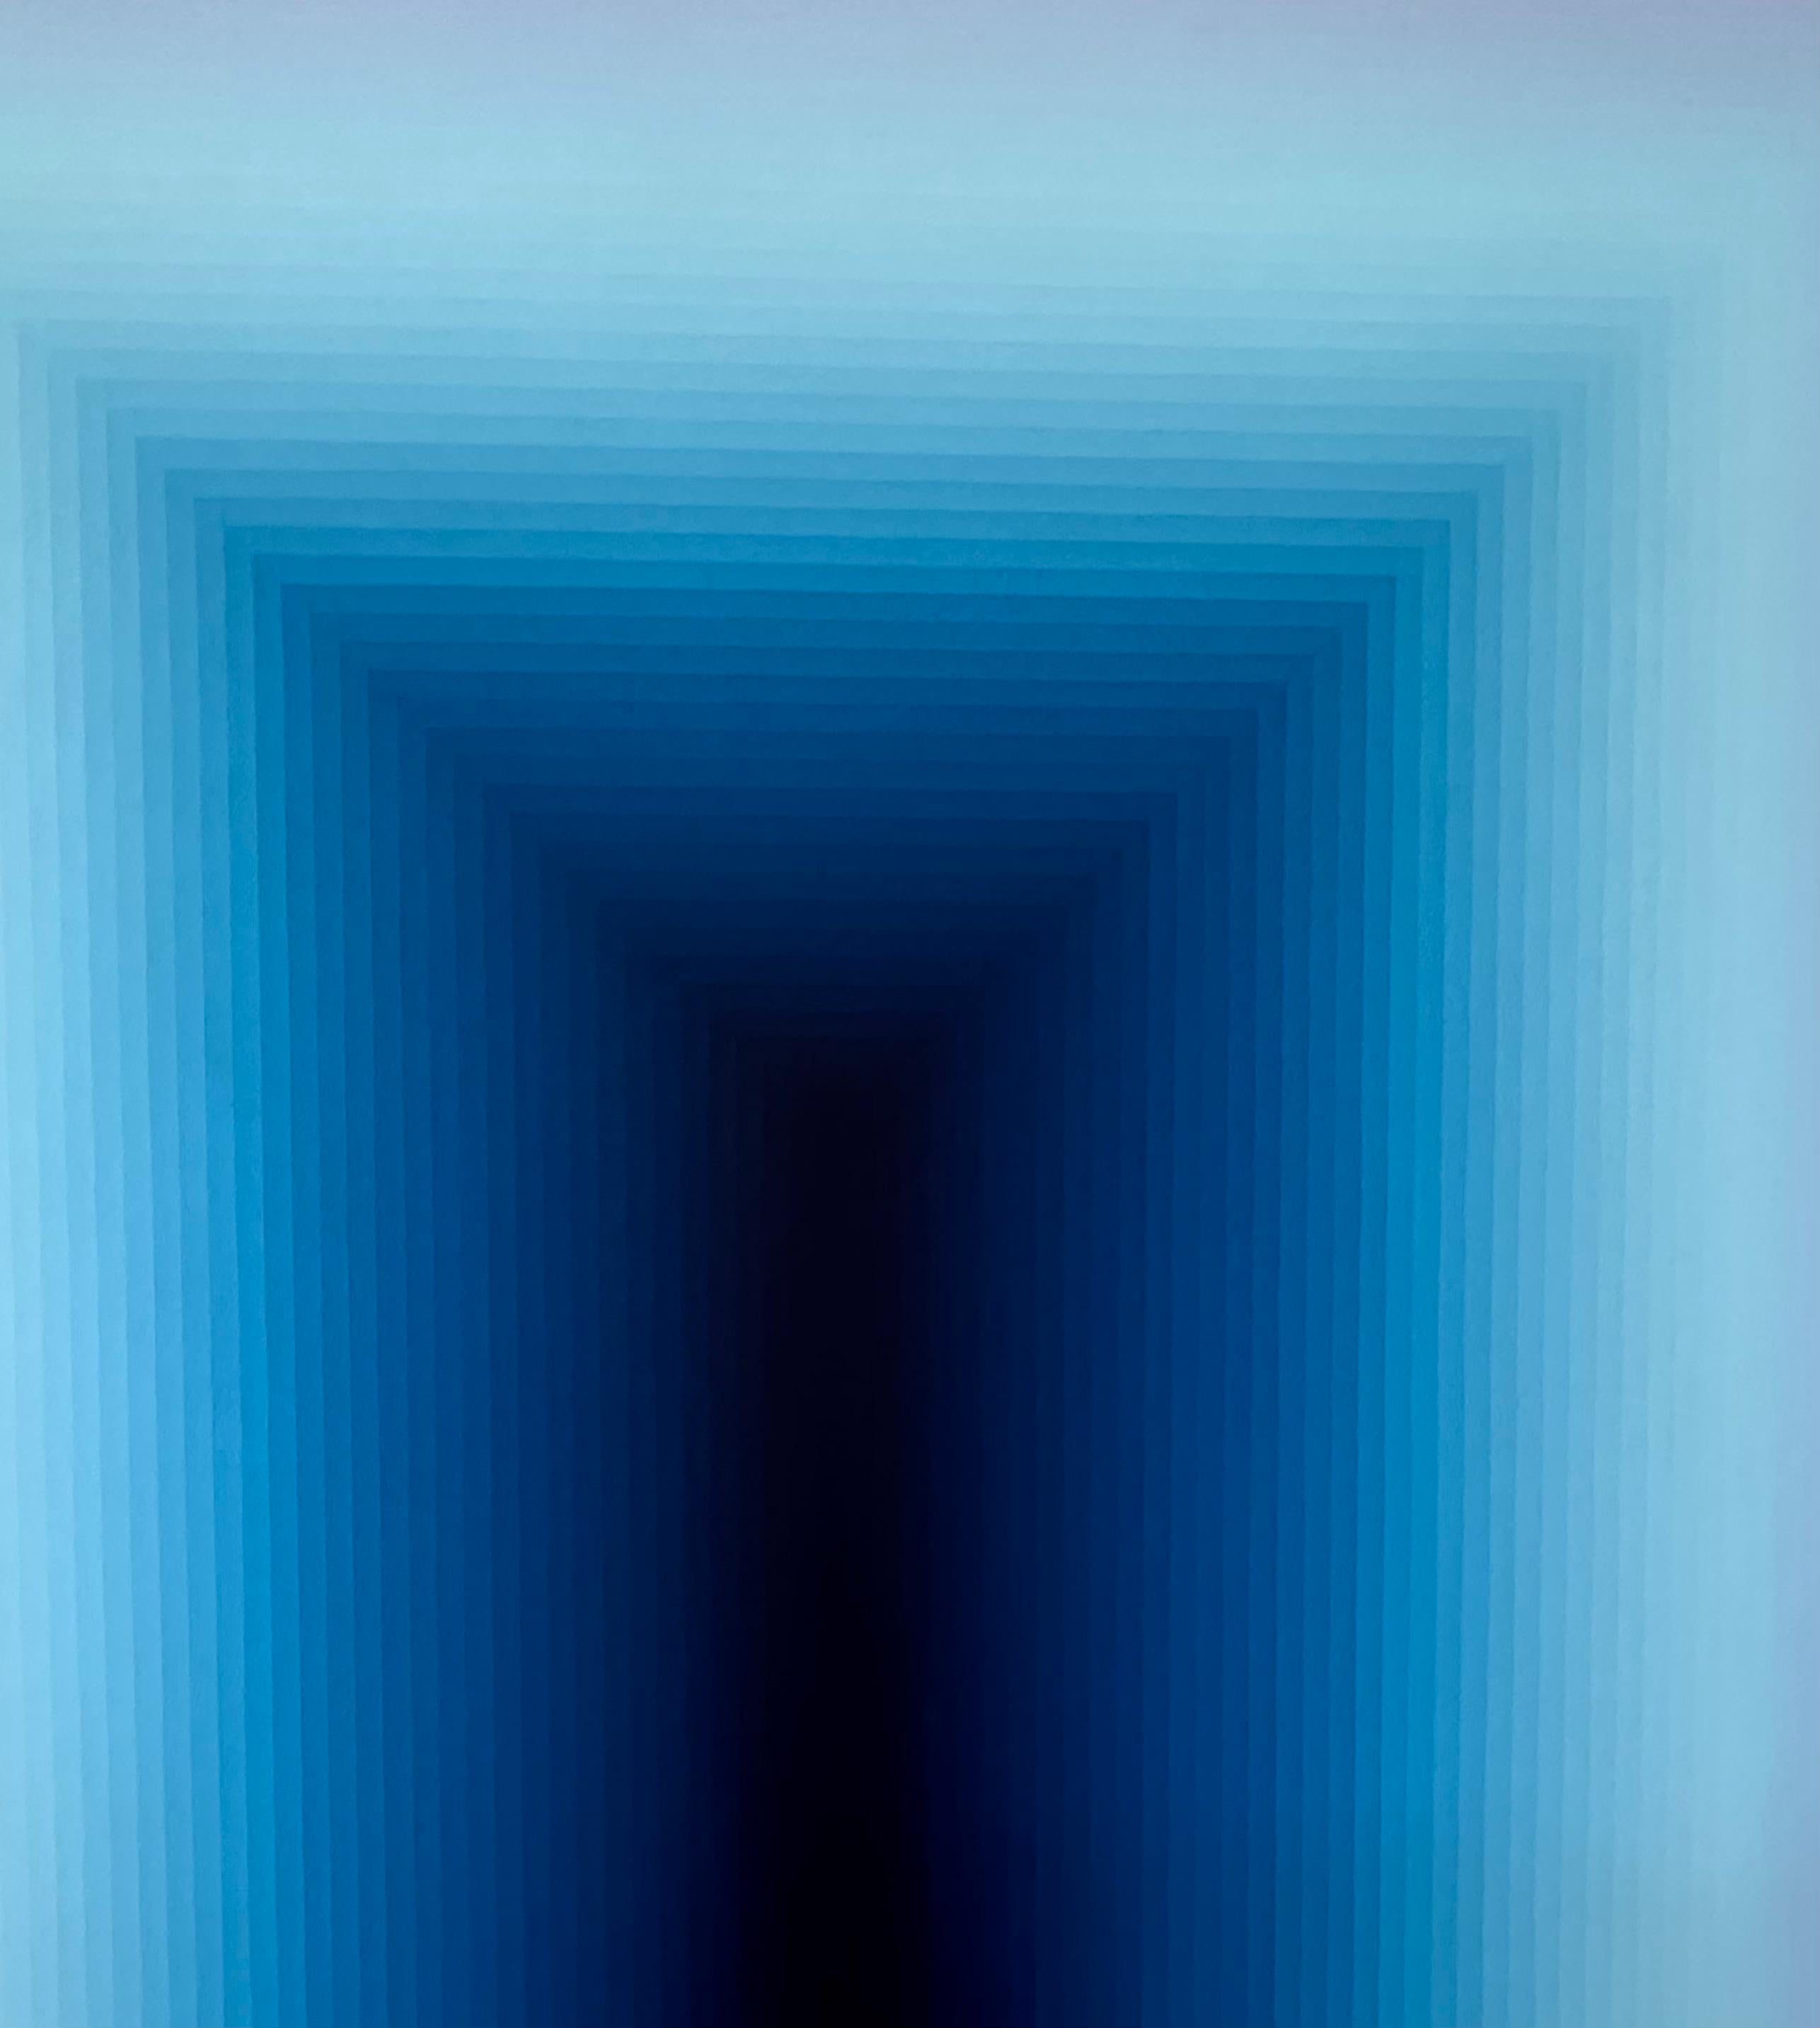 Close Again, Blue Gradient Stripes, Cobalt, Lapis, Sky Blue - Contemporary Painting by Audrey Stone